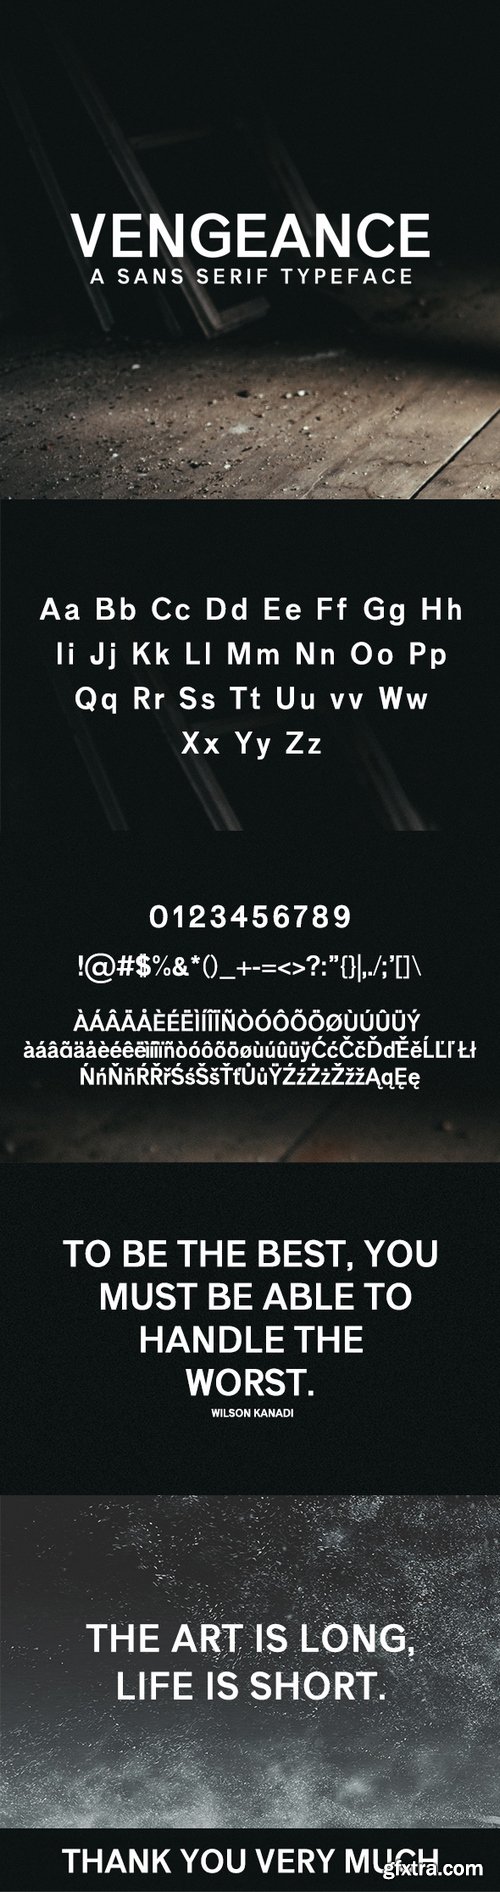 Graphicriver - Vengeance Sans Serif Typeface 19704926